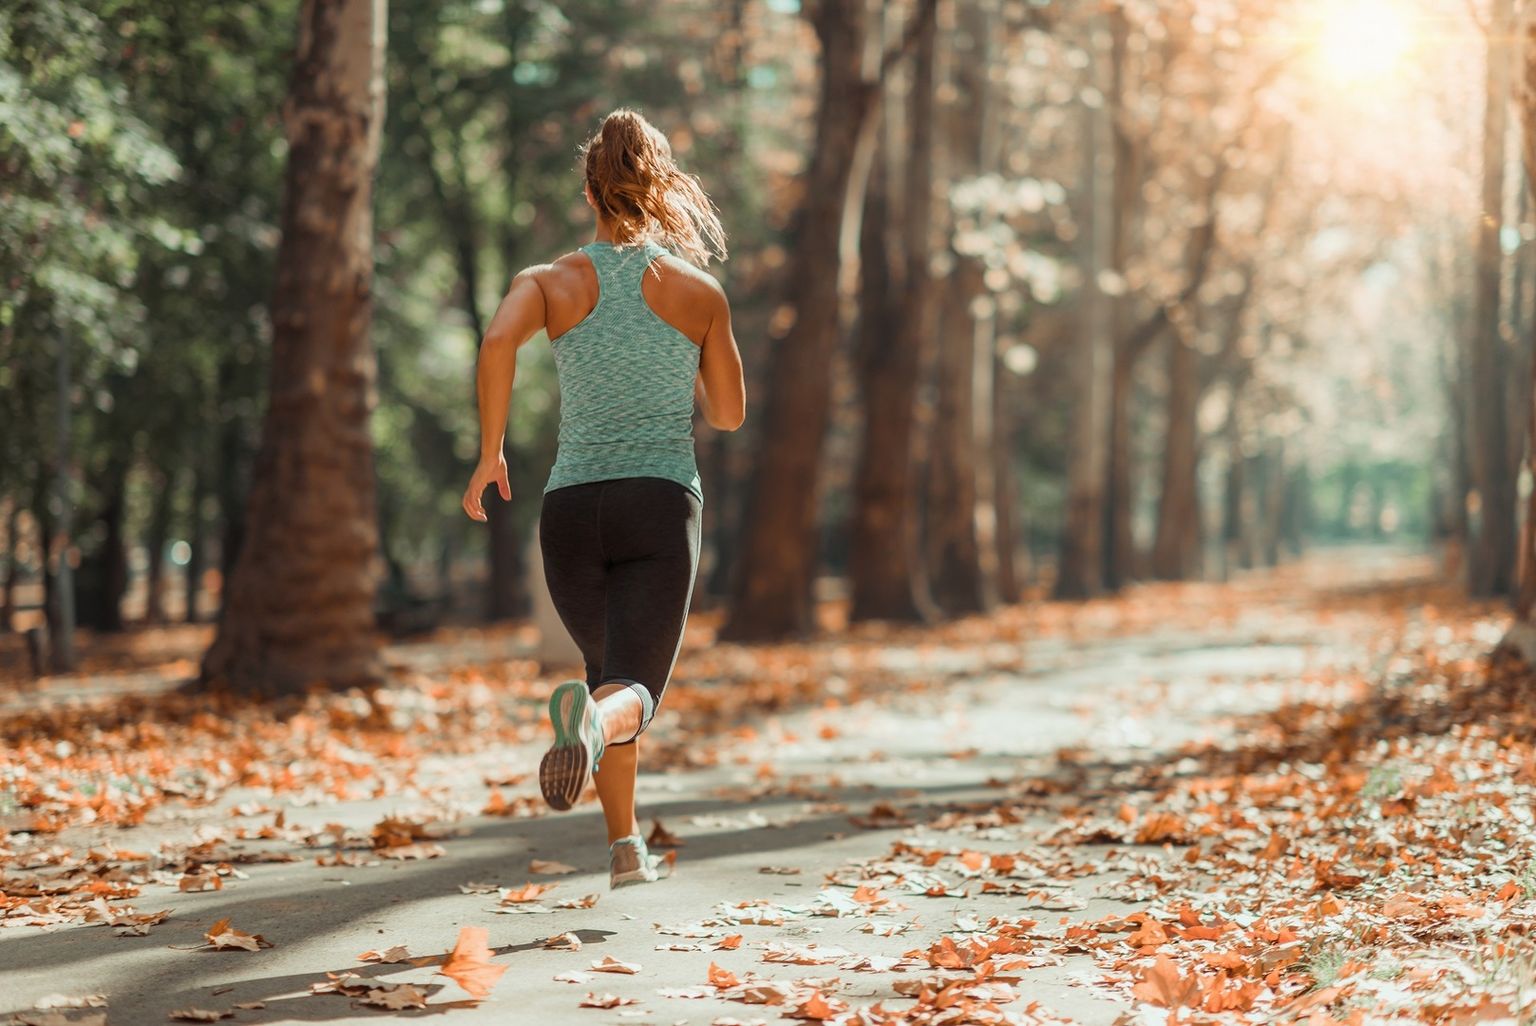 Une femme court sur un chemin forestier - Une bonne condition physique contribue à une meilleure santé à plusieurs égards.